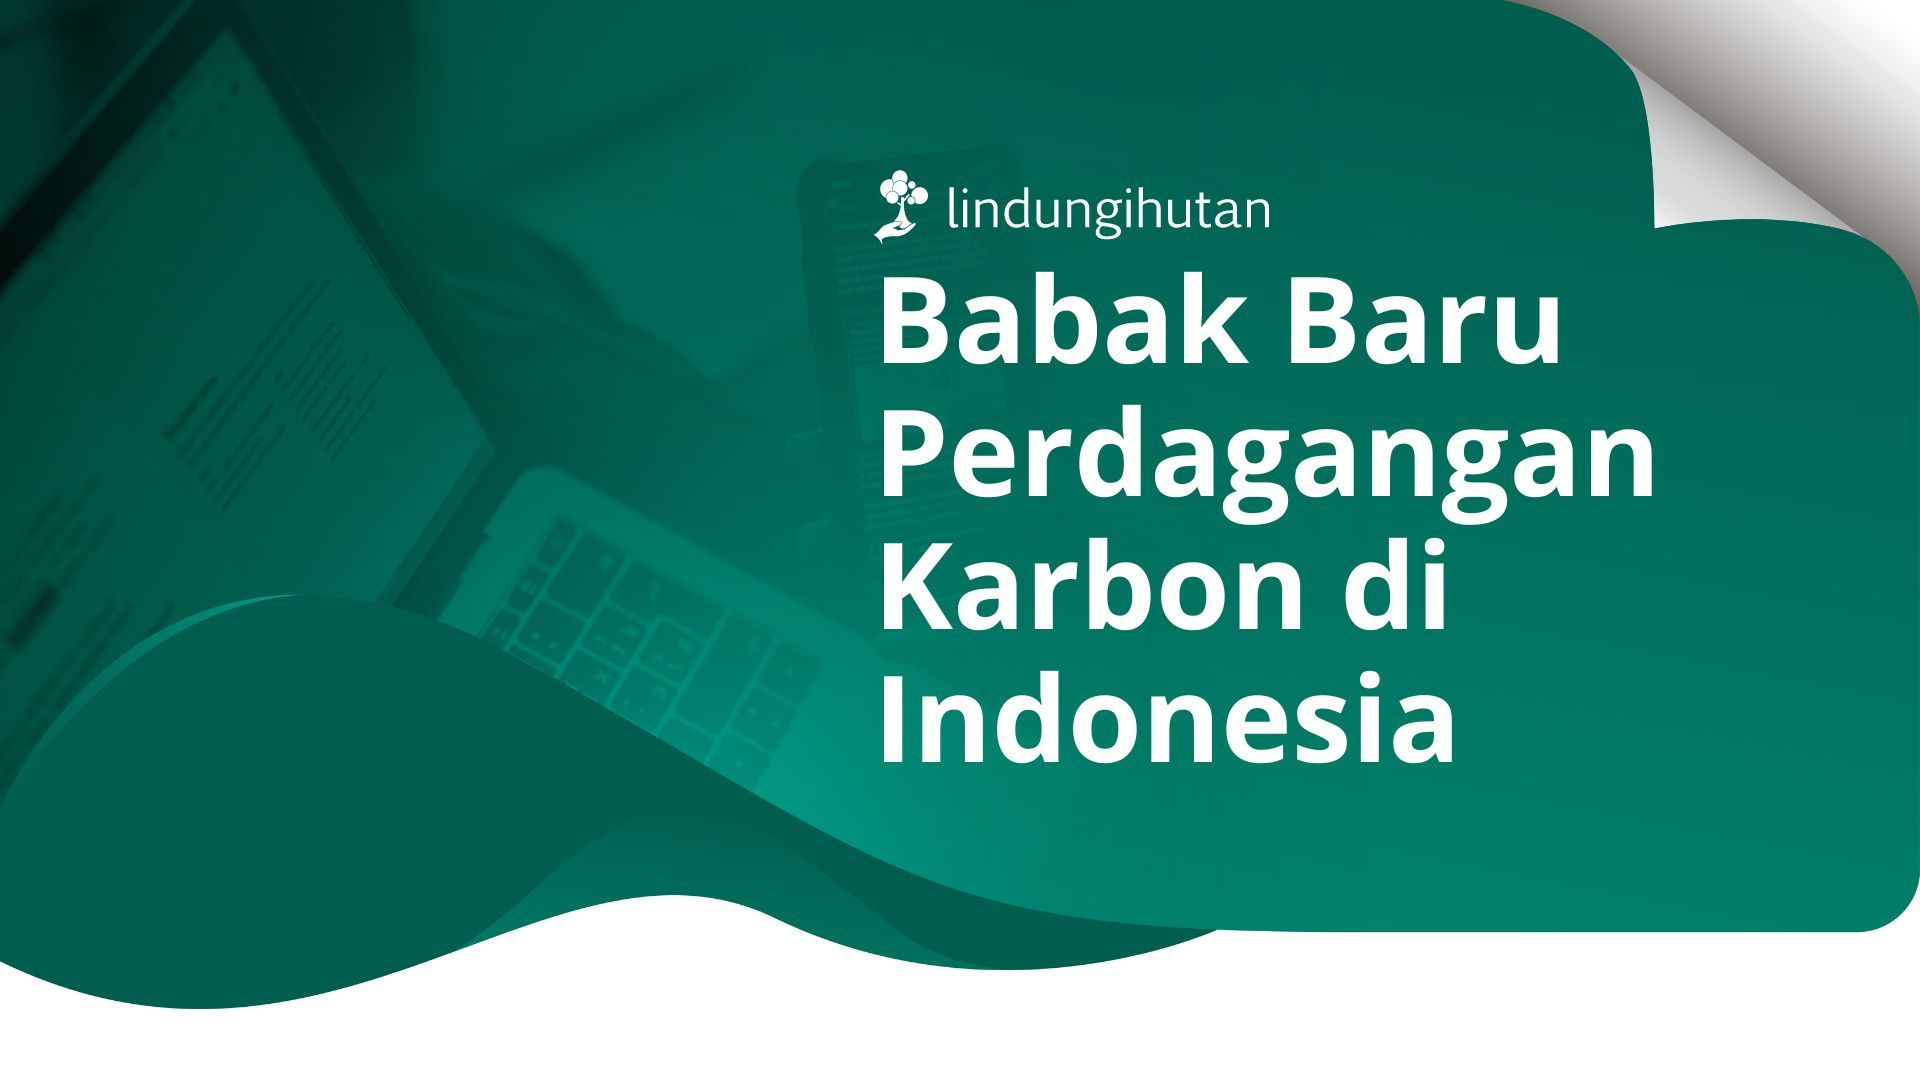 Perdagangan karbon di Indonesia